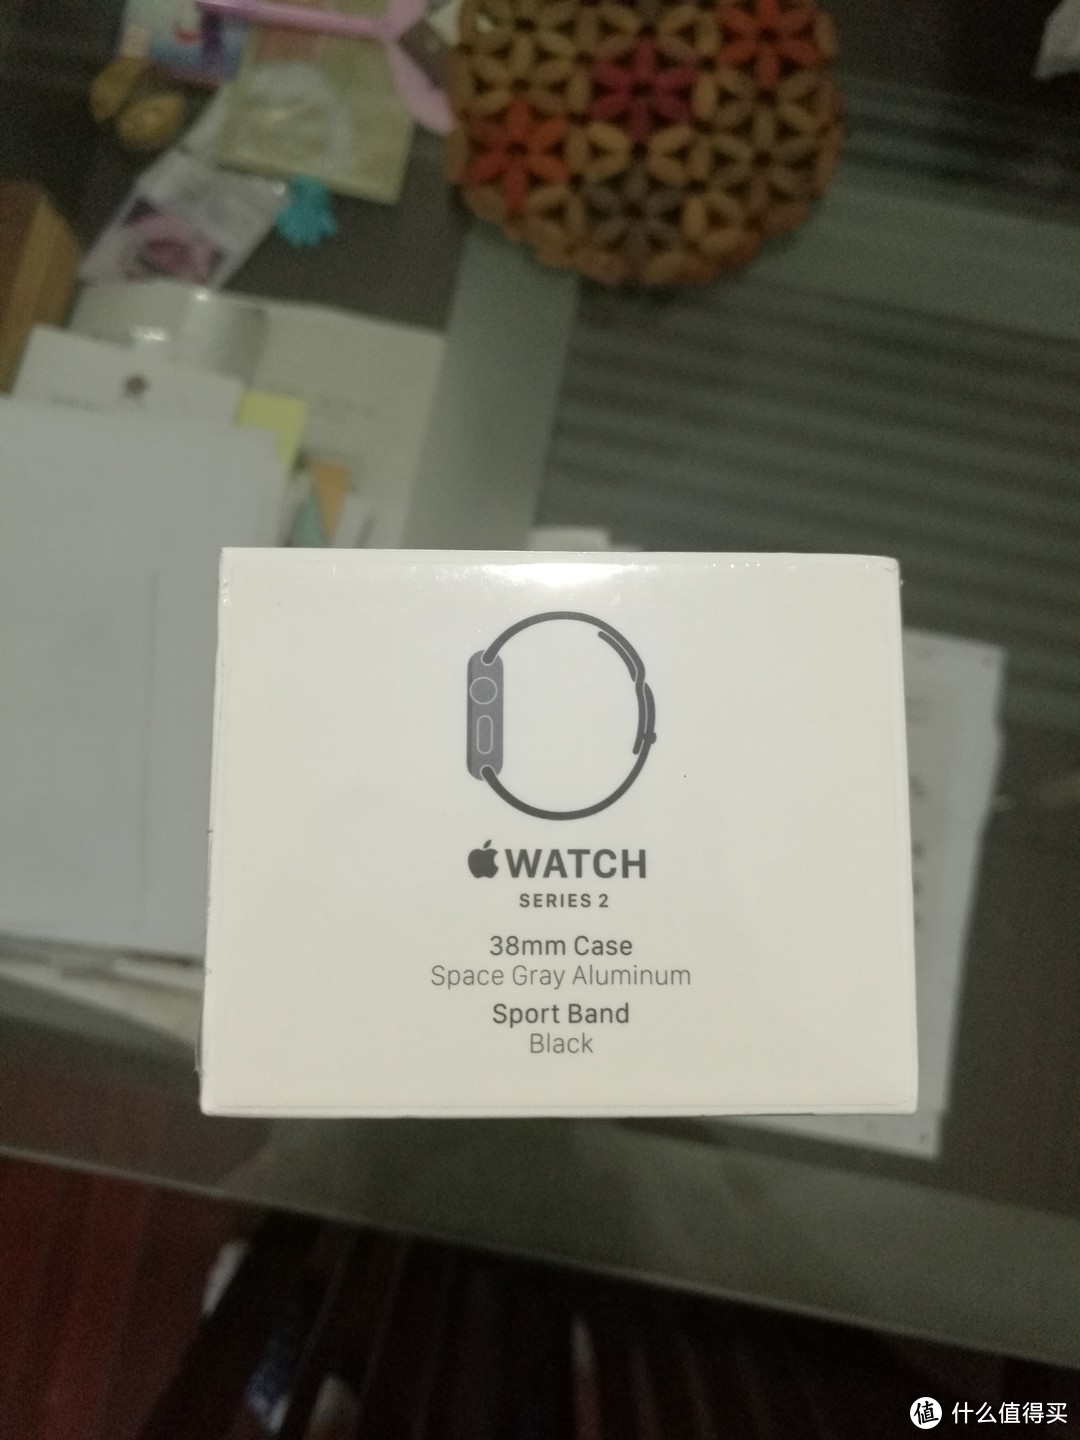 #中奖秀#第3期 Apple 苹果 Watch Sport Series 2 智能手表 中奖有感